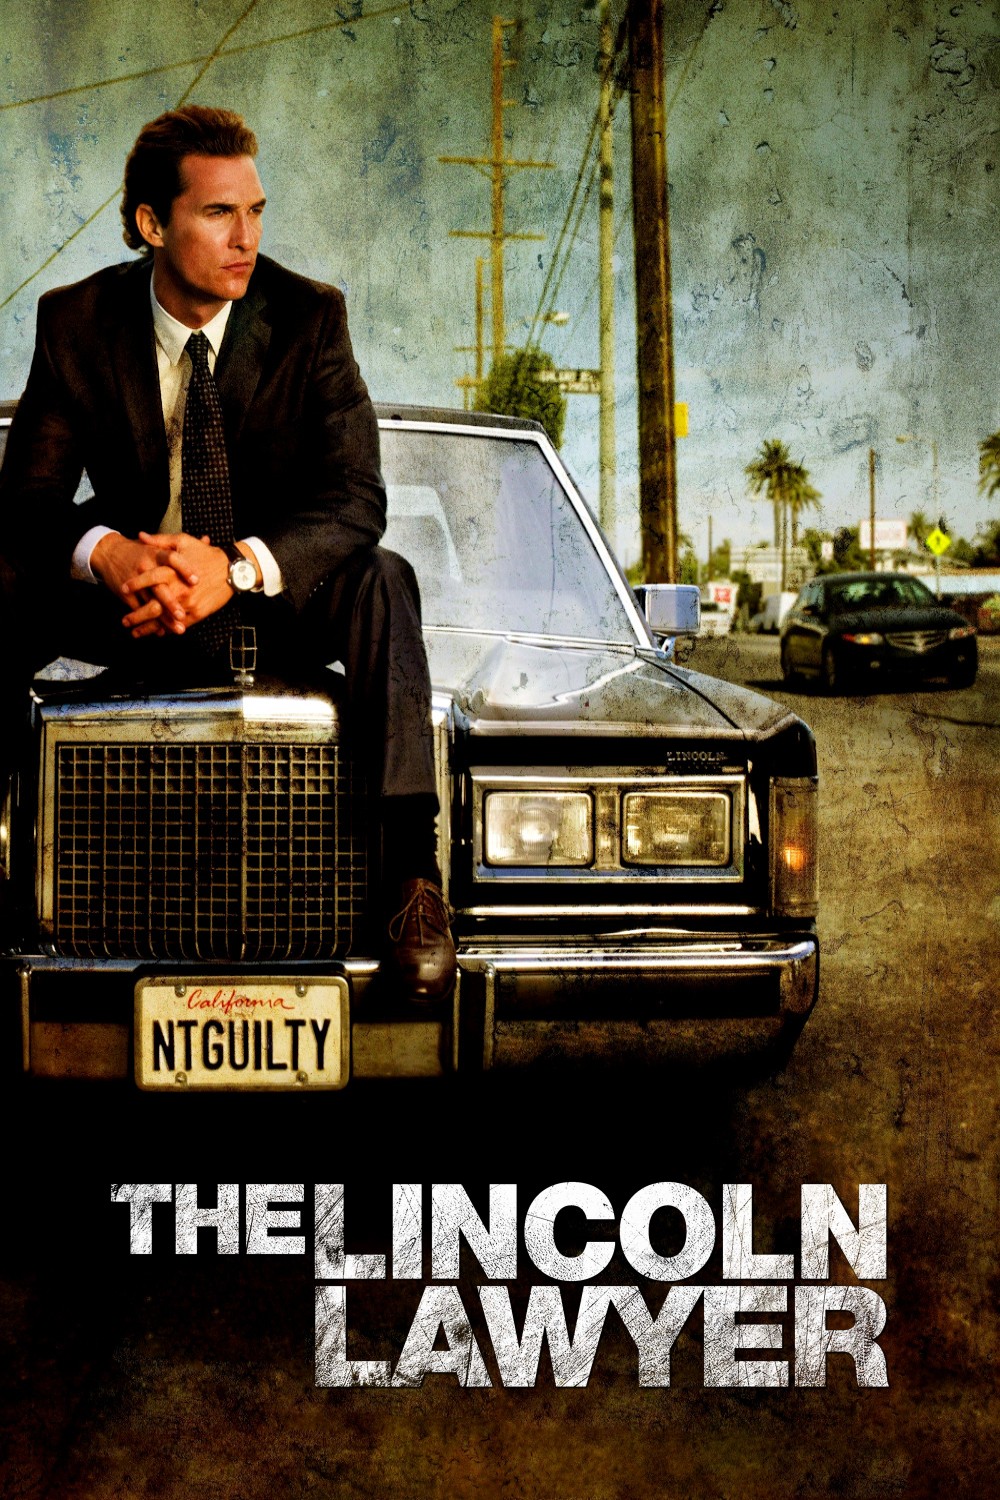 دانلود فیلم The Lincoln Lawyer 2011